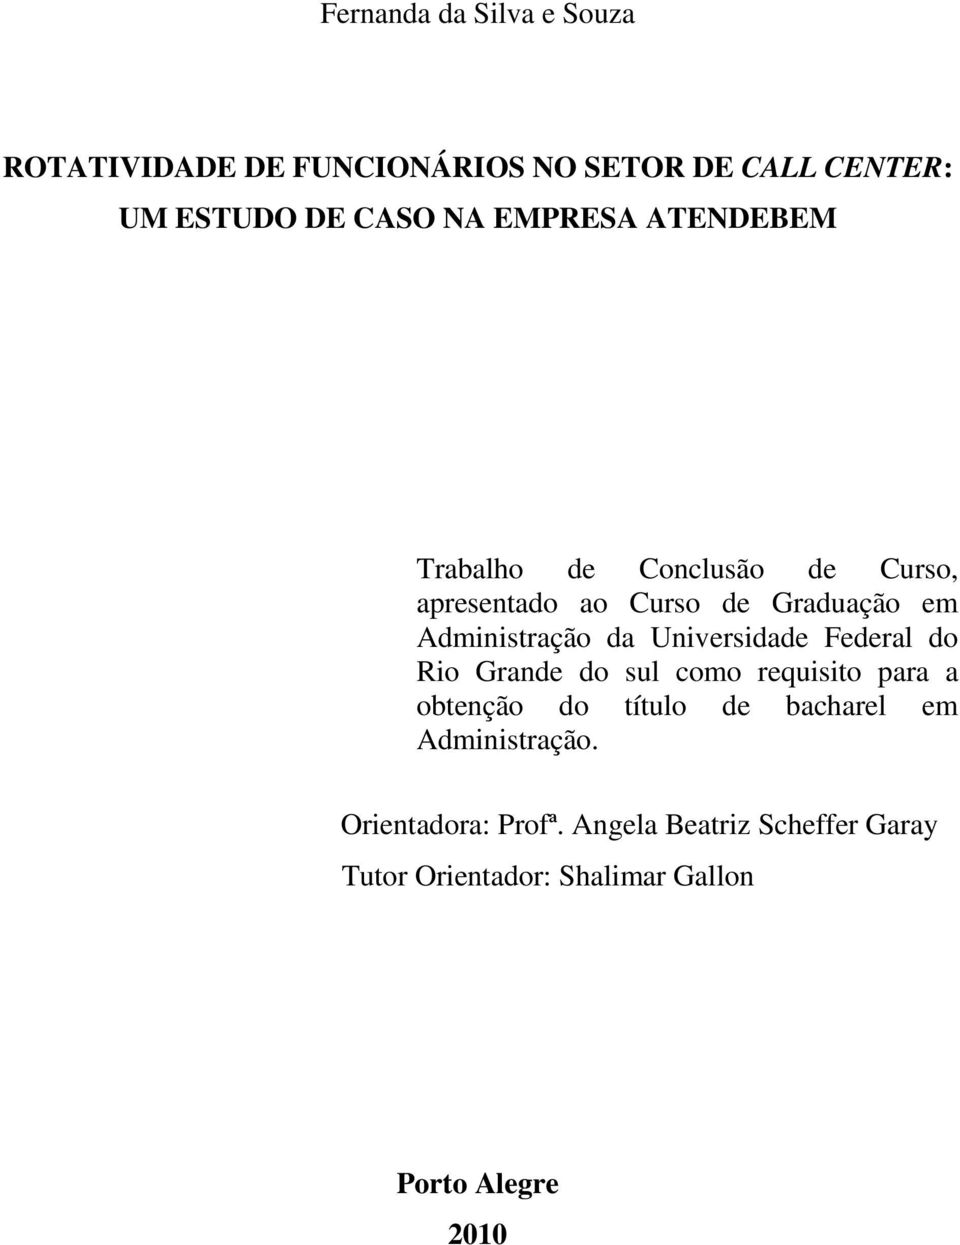 Universidade Federal do Rio Grande do sul como requisito para a obtenção do título de bacharel em